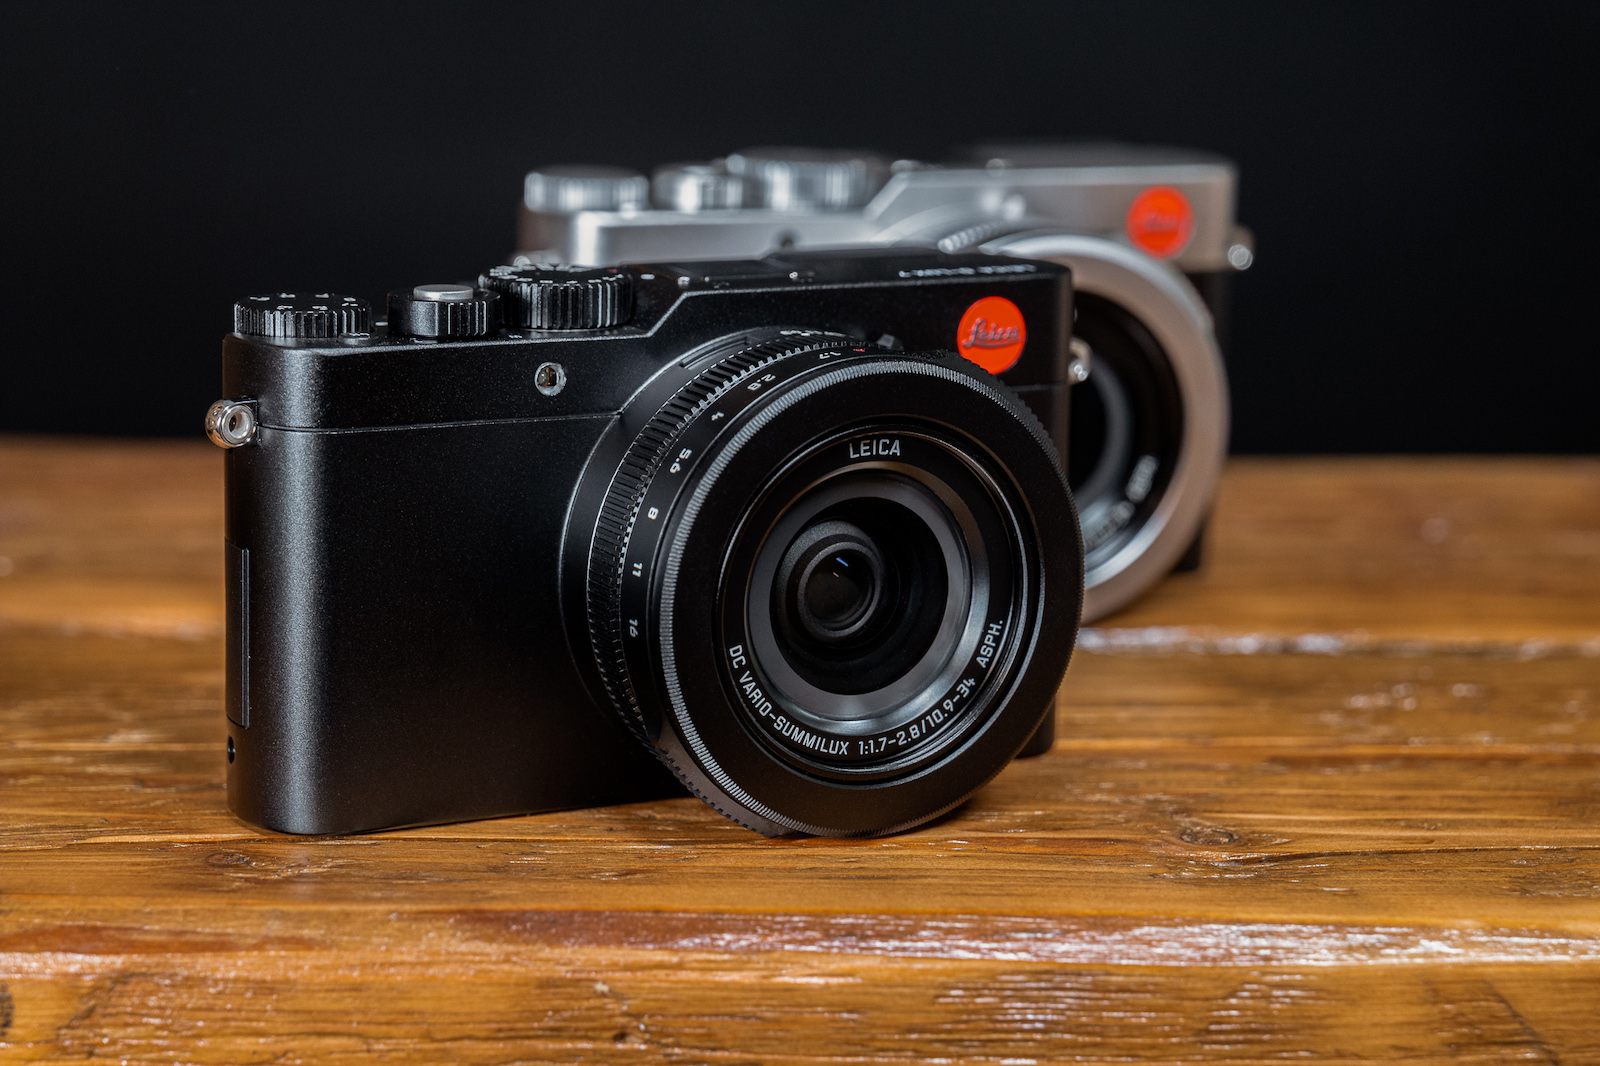 Leica D-Lux 7 phiên bản màu đen chính thức ra mắt